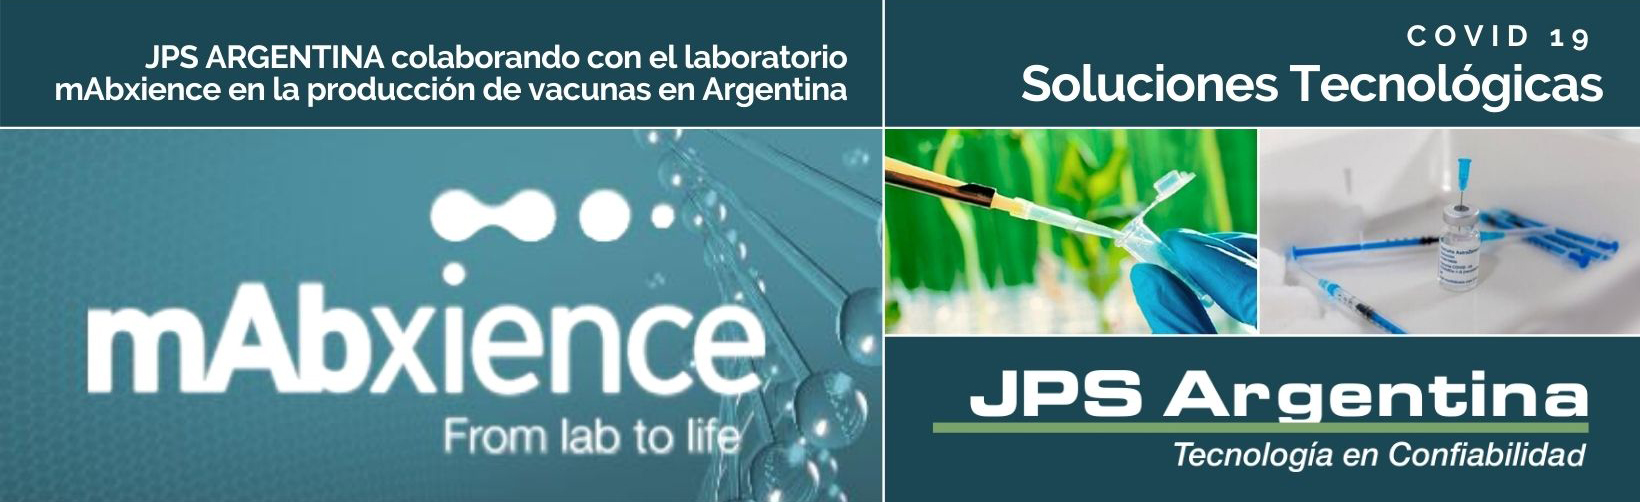 JPS ARGENTINA colabora con el laboratorio mAbxience en la producción de vacunas en Argentina